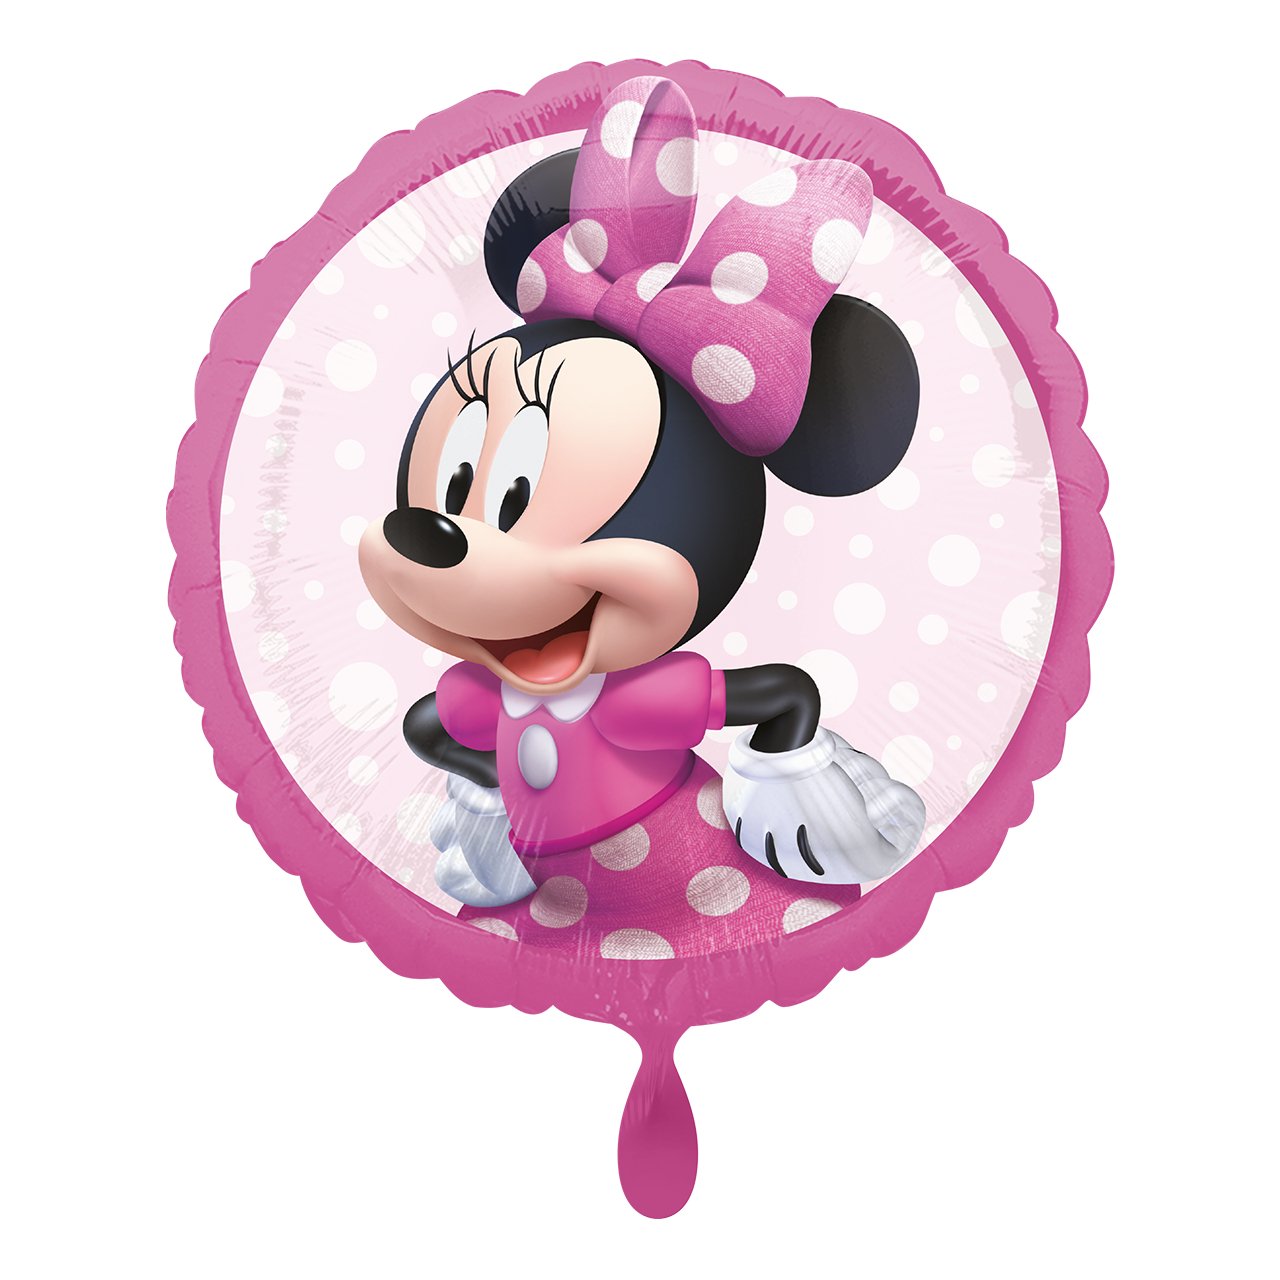 Partykarton "Minnie Mouse" 55 Teile - Party im Karton